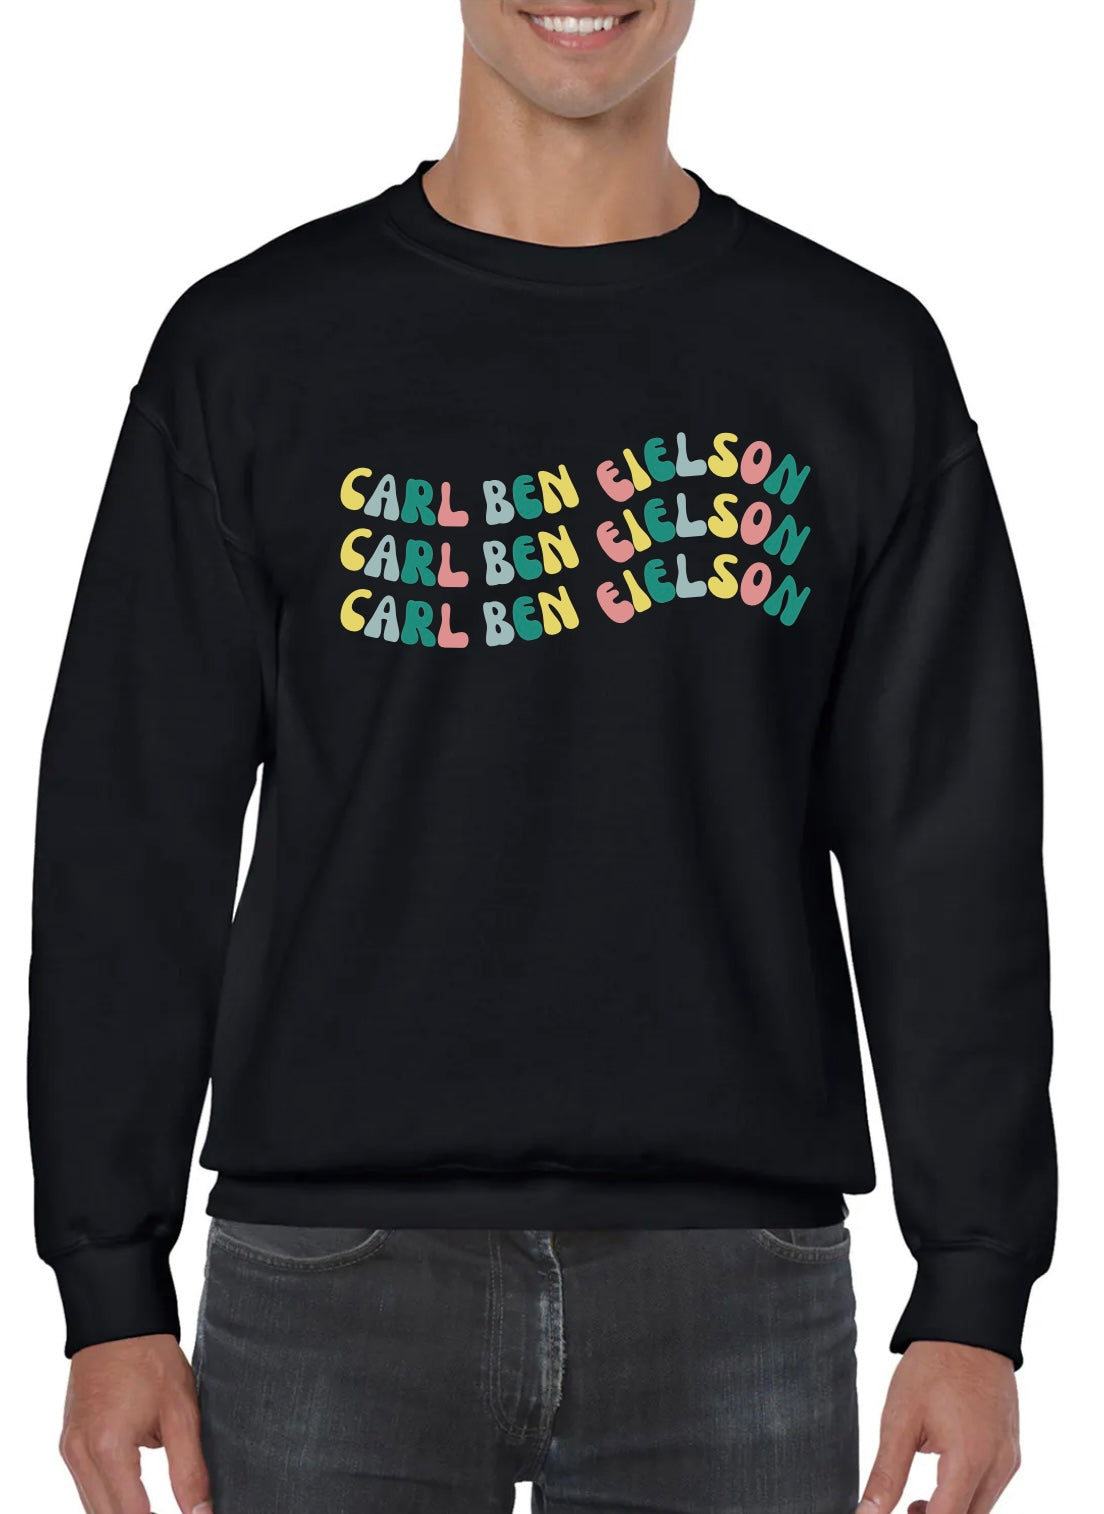 Carl Ben Crew Sweatshirt